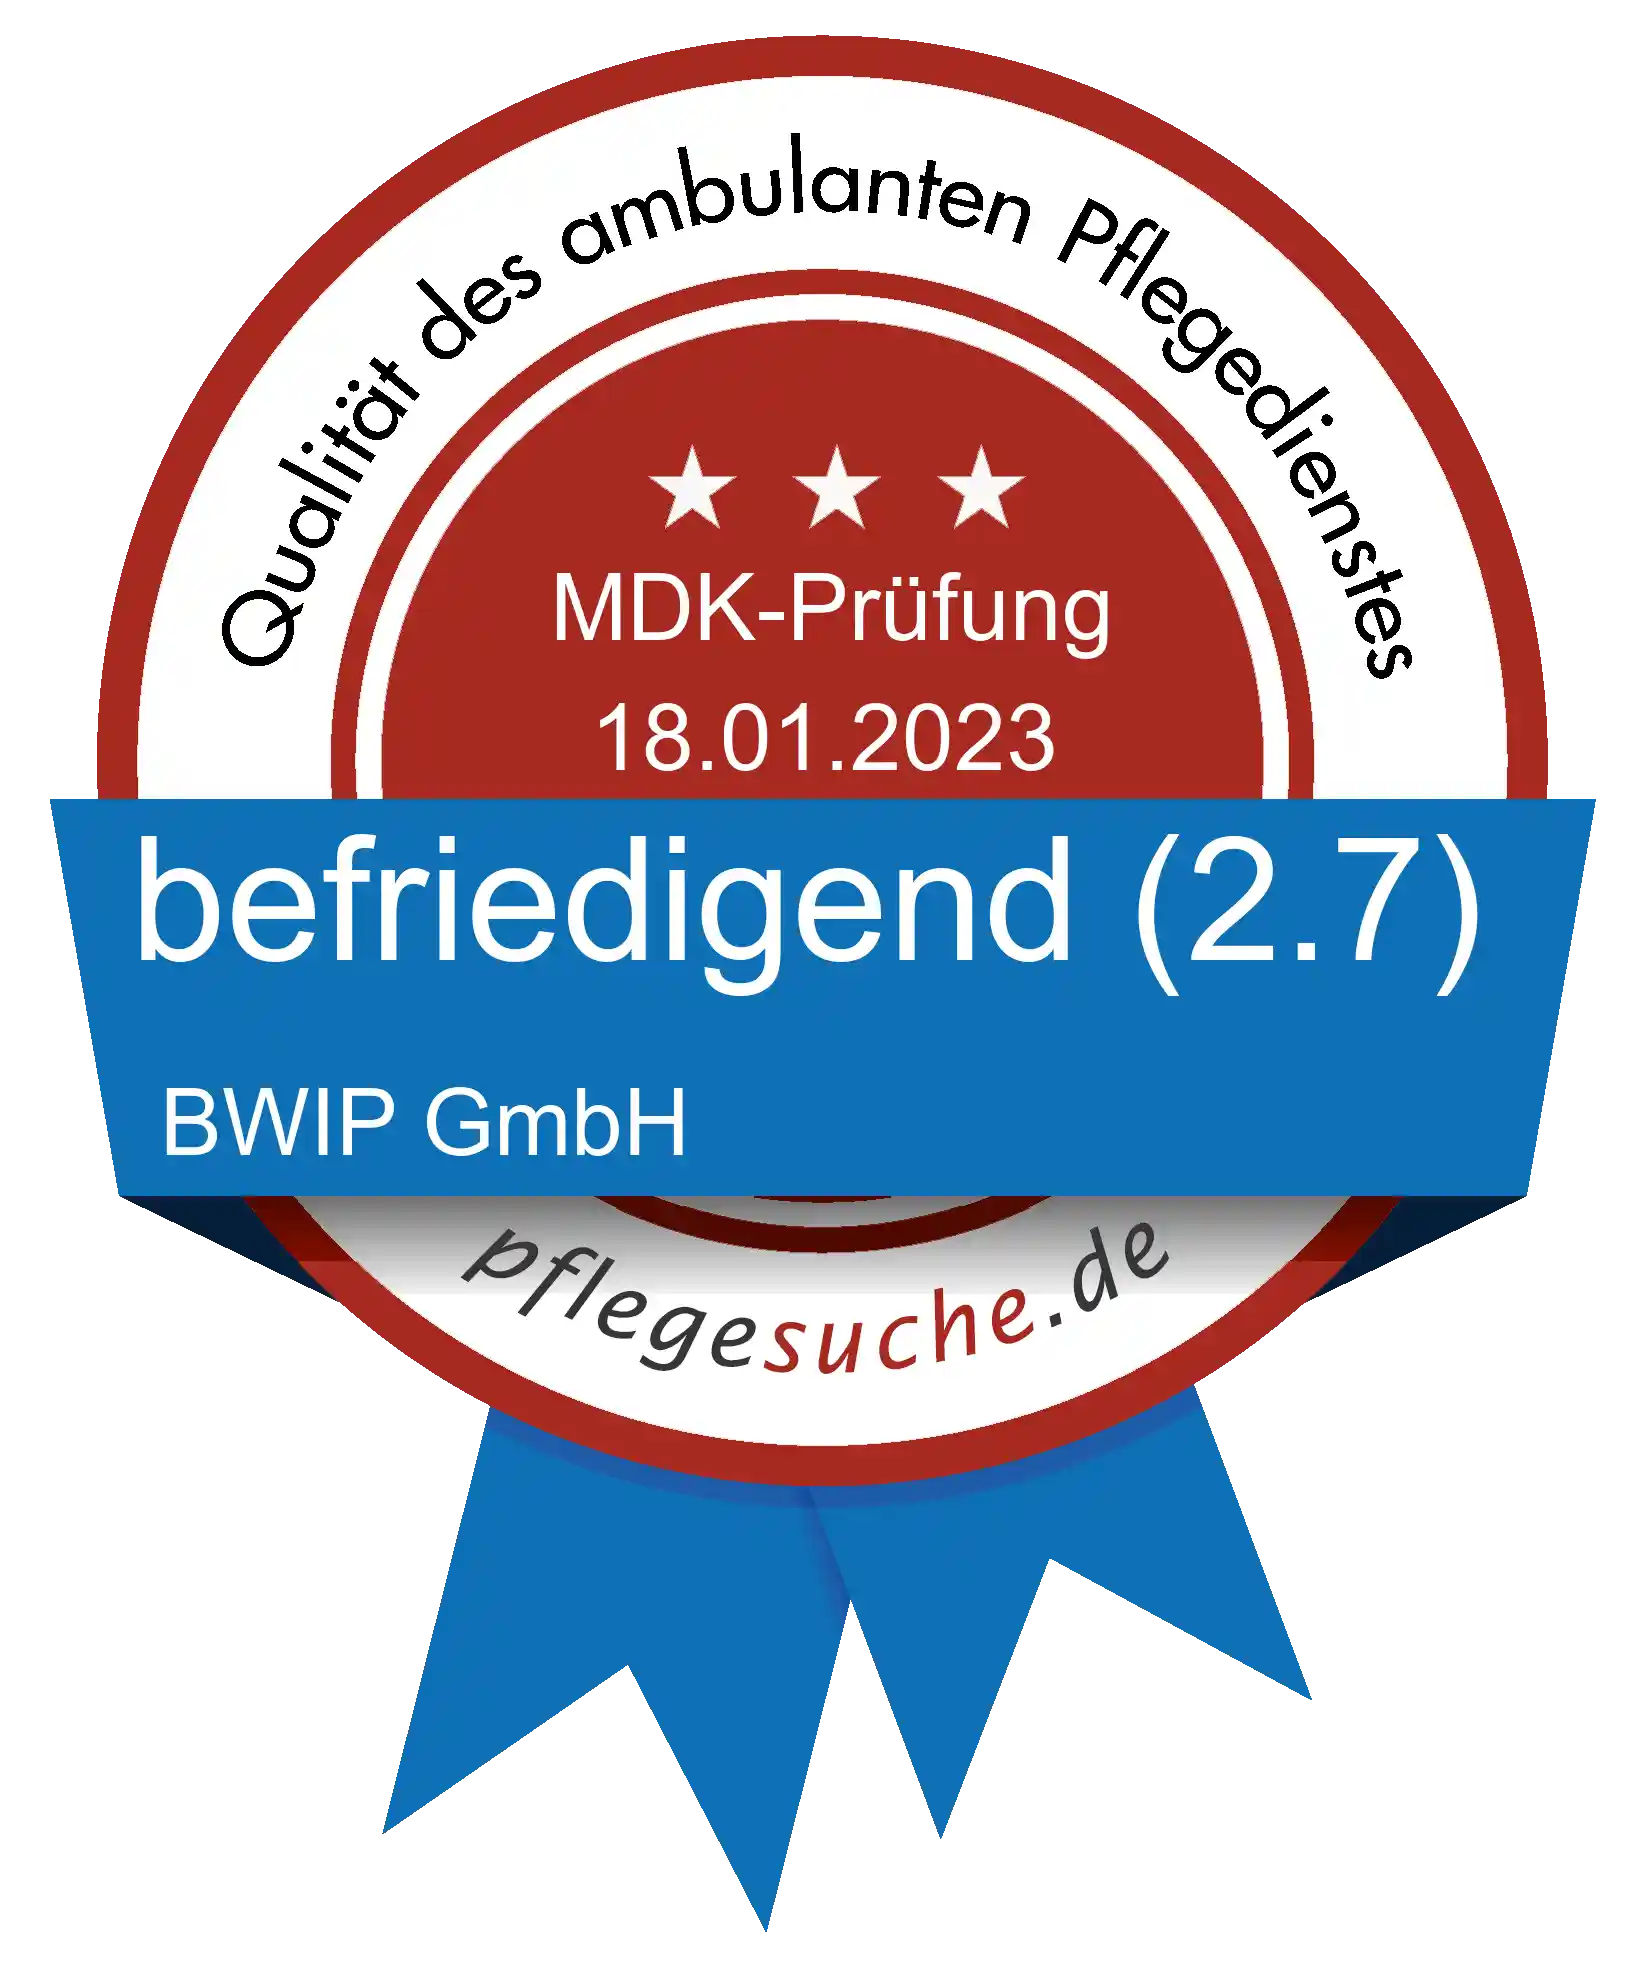 Siegel Benotung: BWIP GmbH